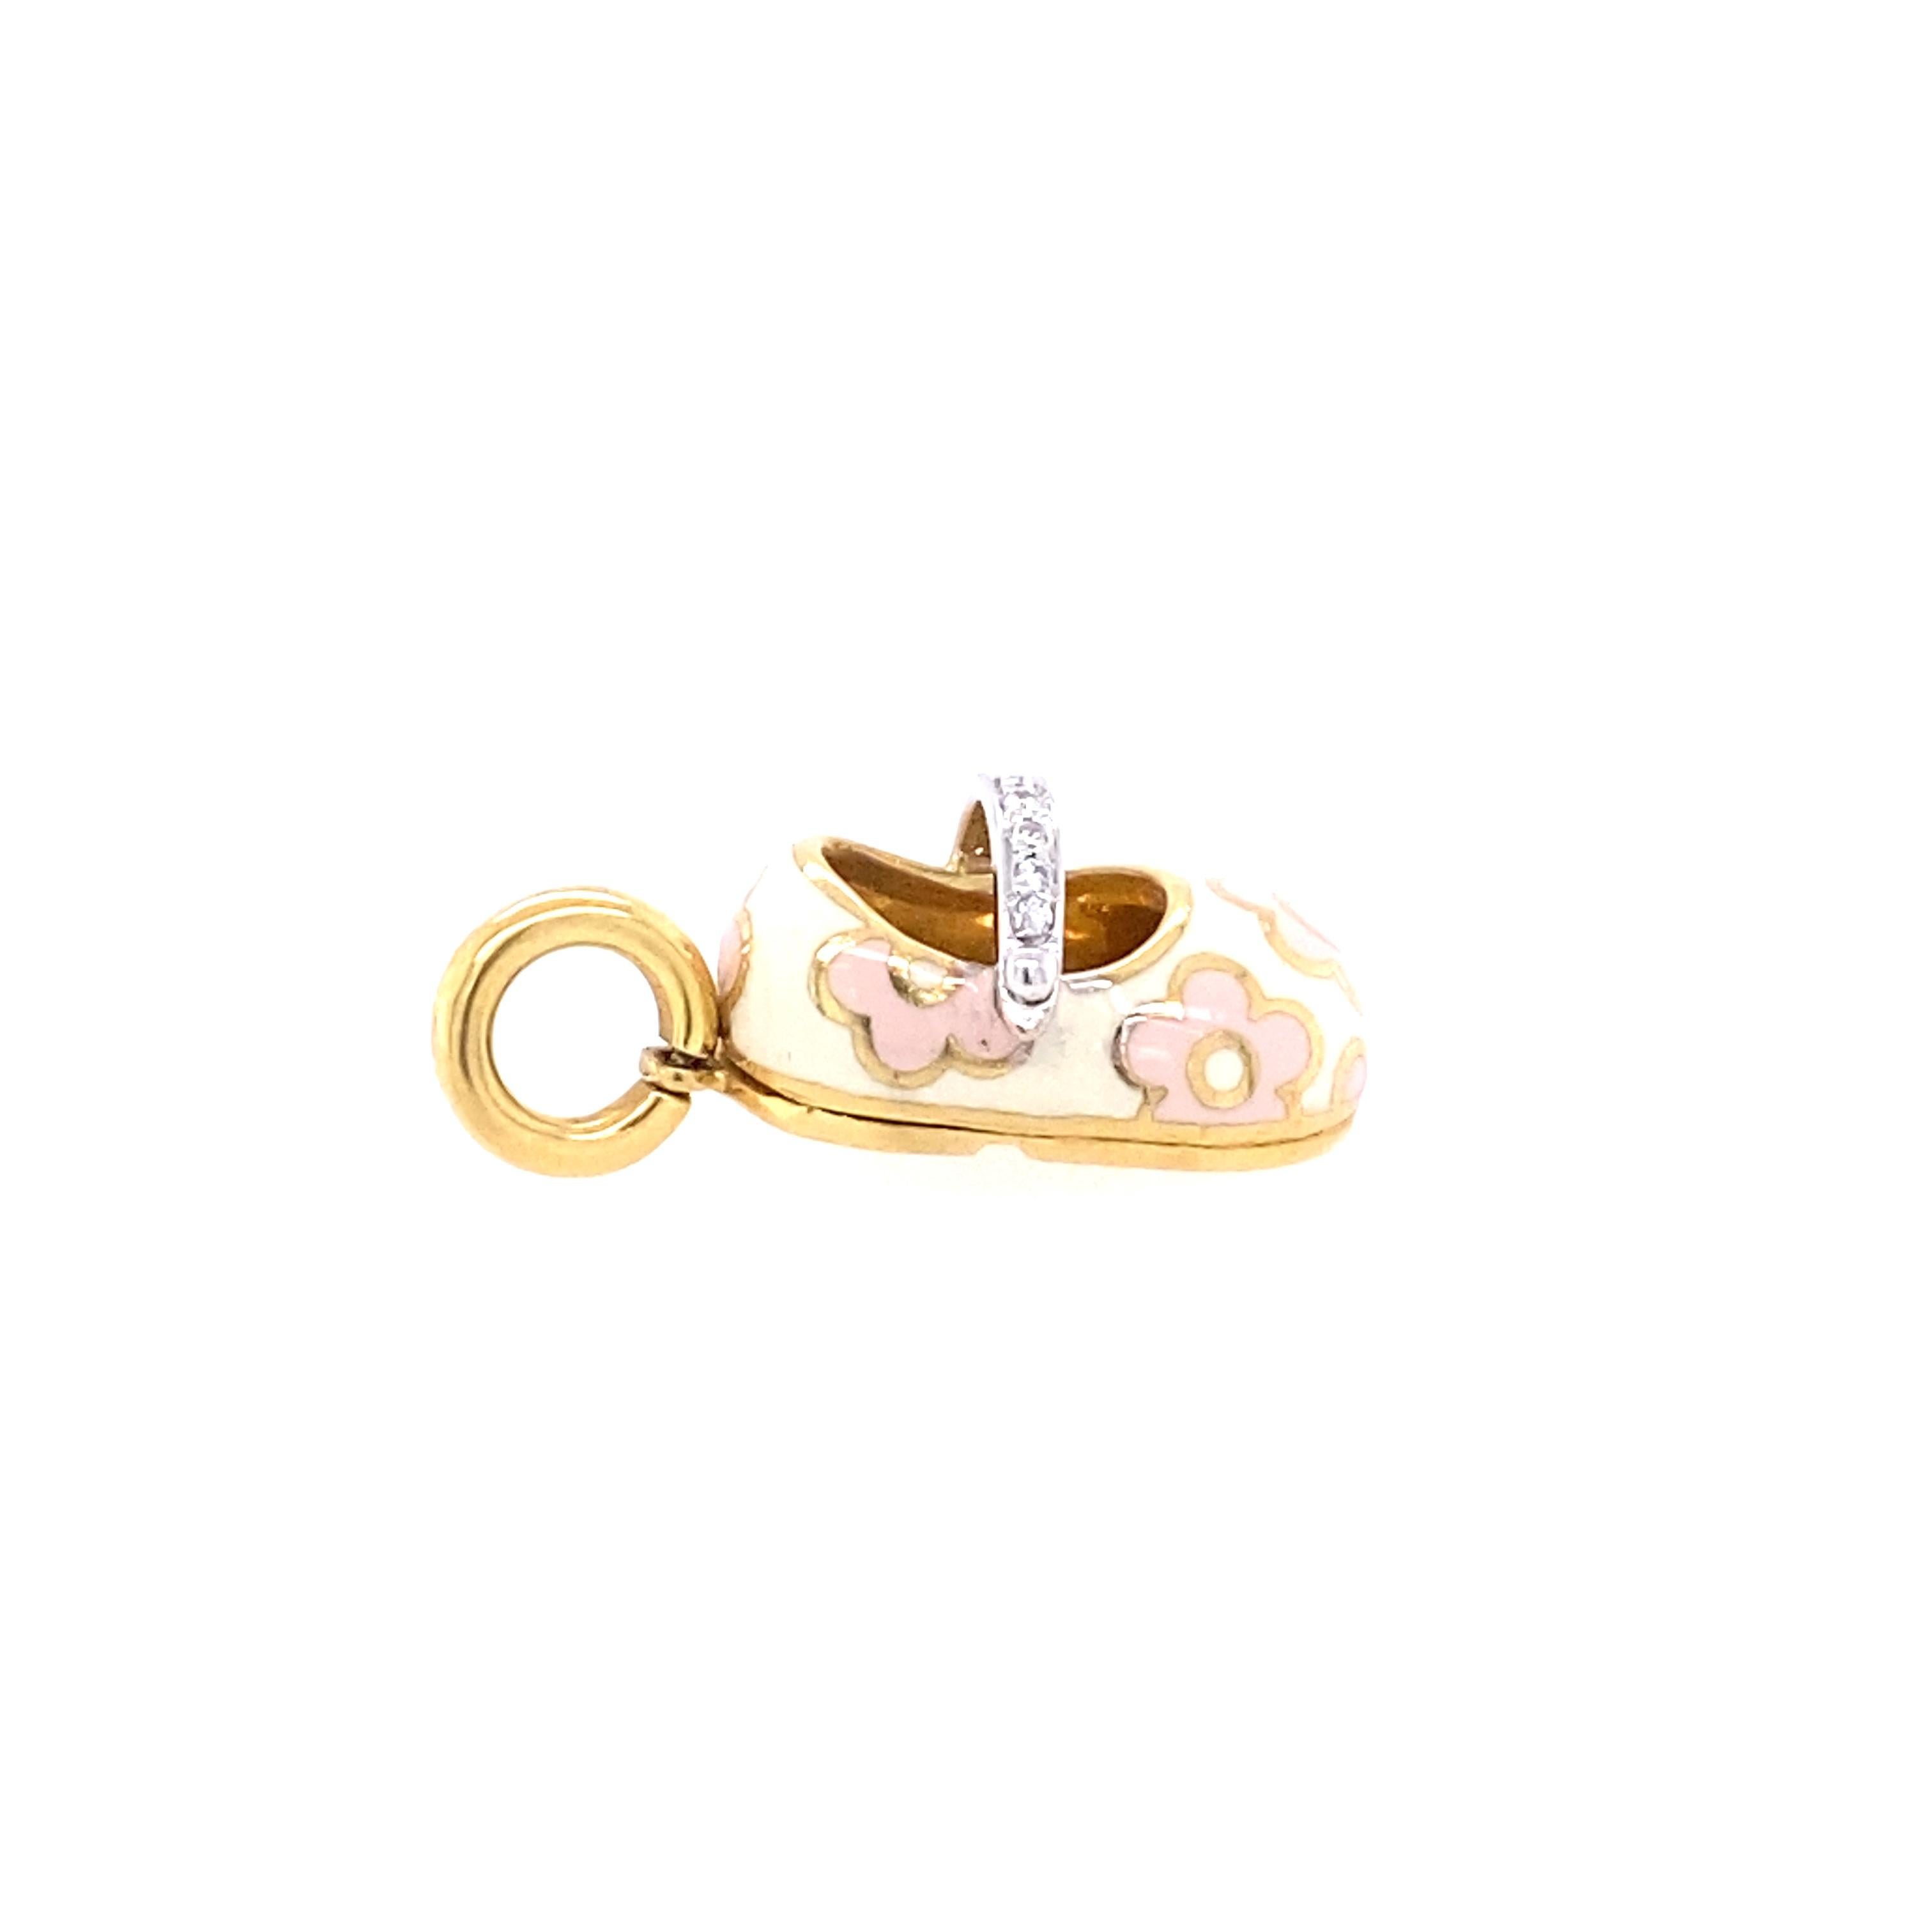 18k yellow gold Aaron Basha shoe charm with Pink enamel and diamonds